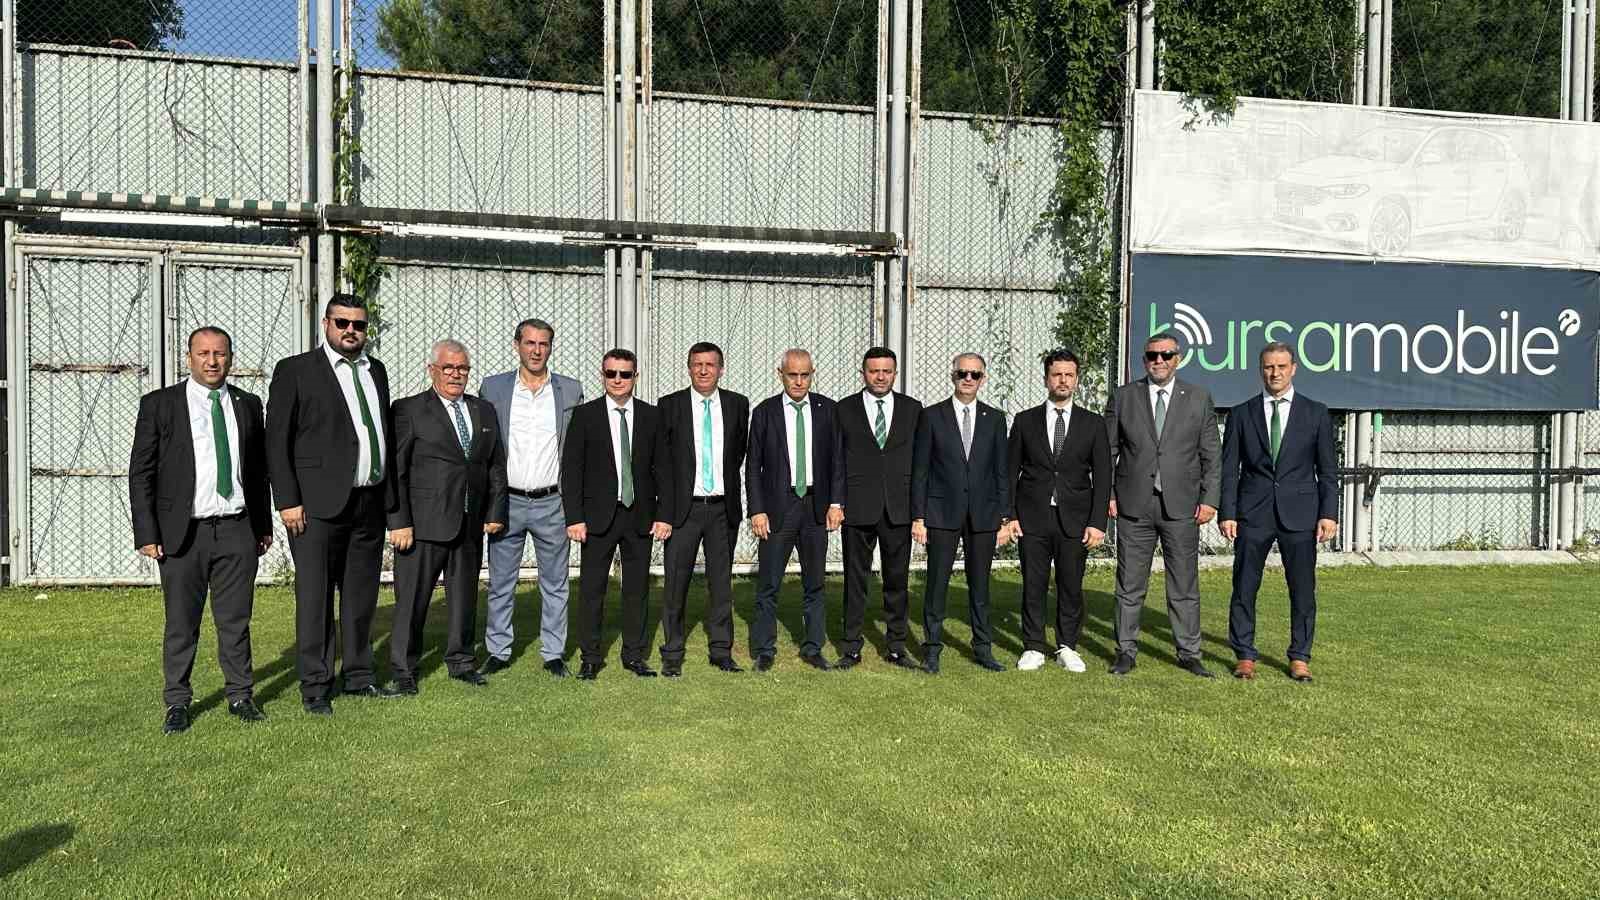 Bursaspor’da yeni sezon hazırlıkları başladı